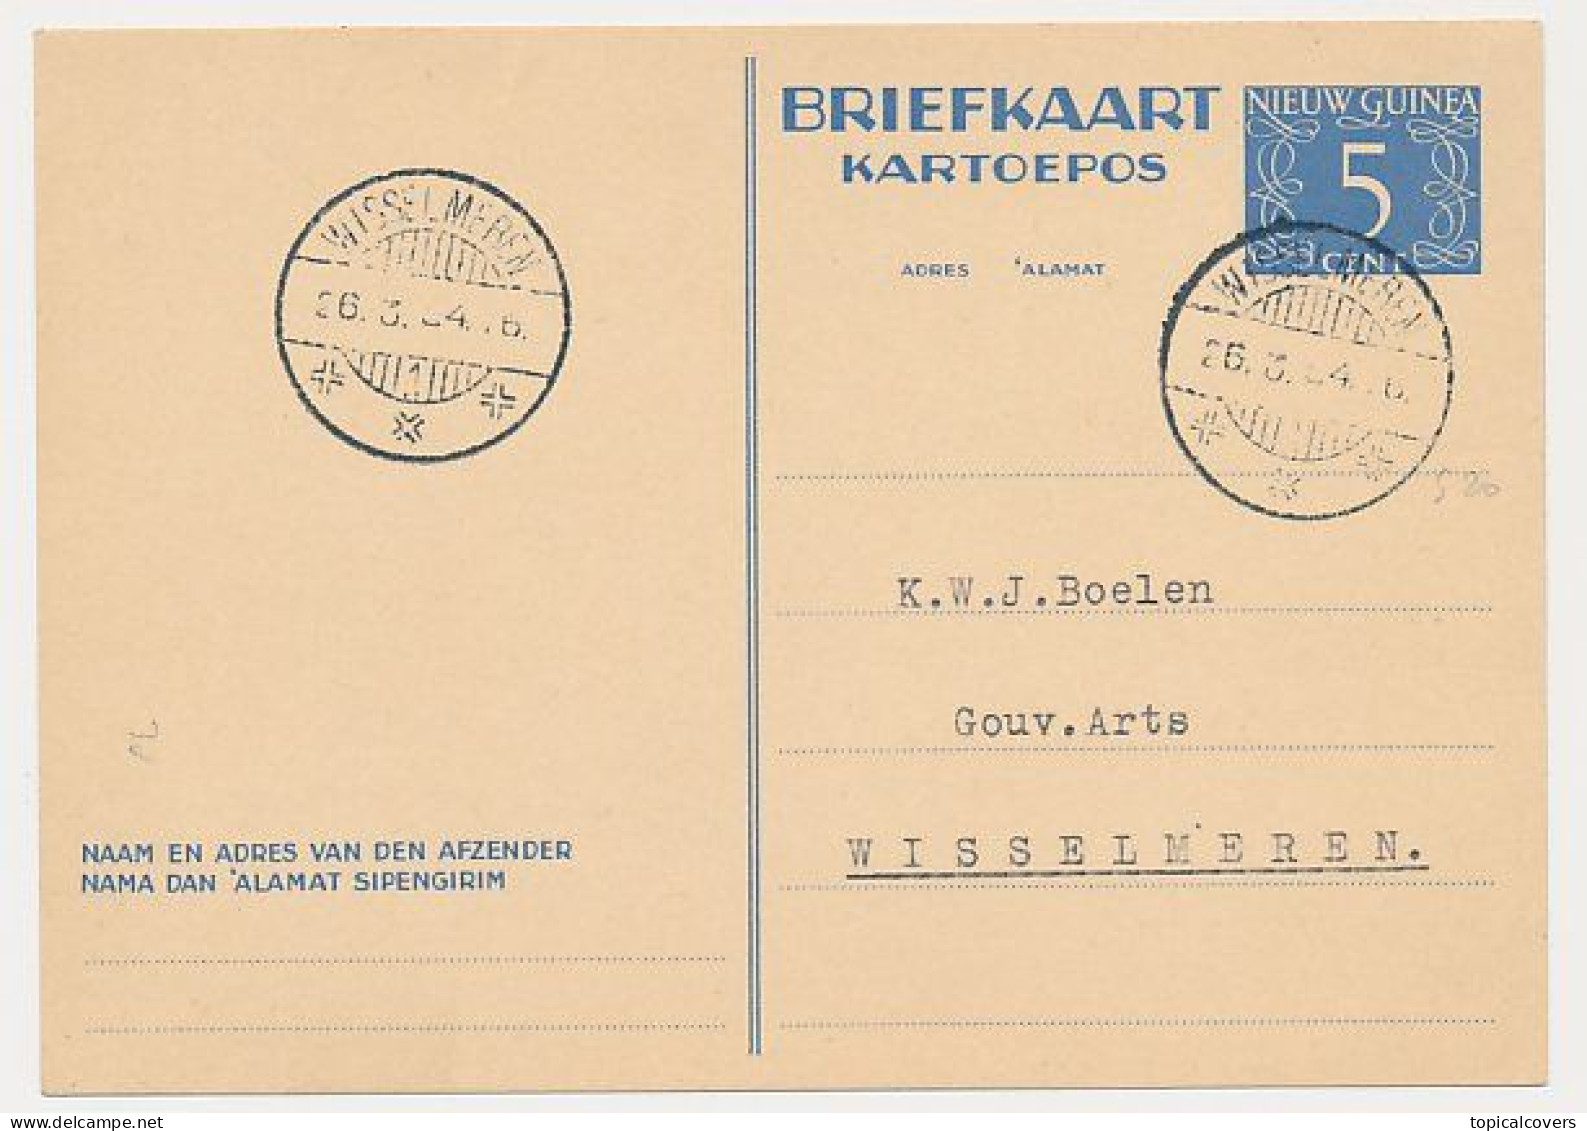 Nederlands Nieuw Guinea / NNG - Briefkaart G. 1 Wisselmeren 1954 - Niederländisch-Neuguinea